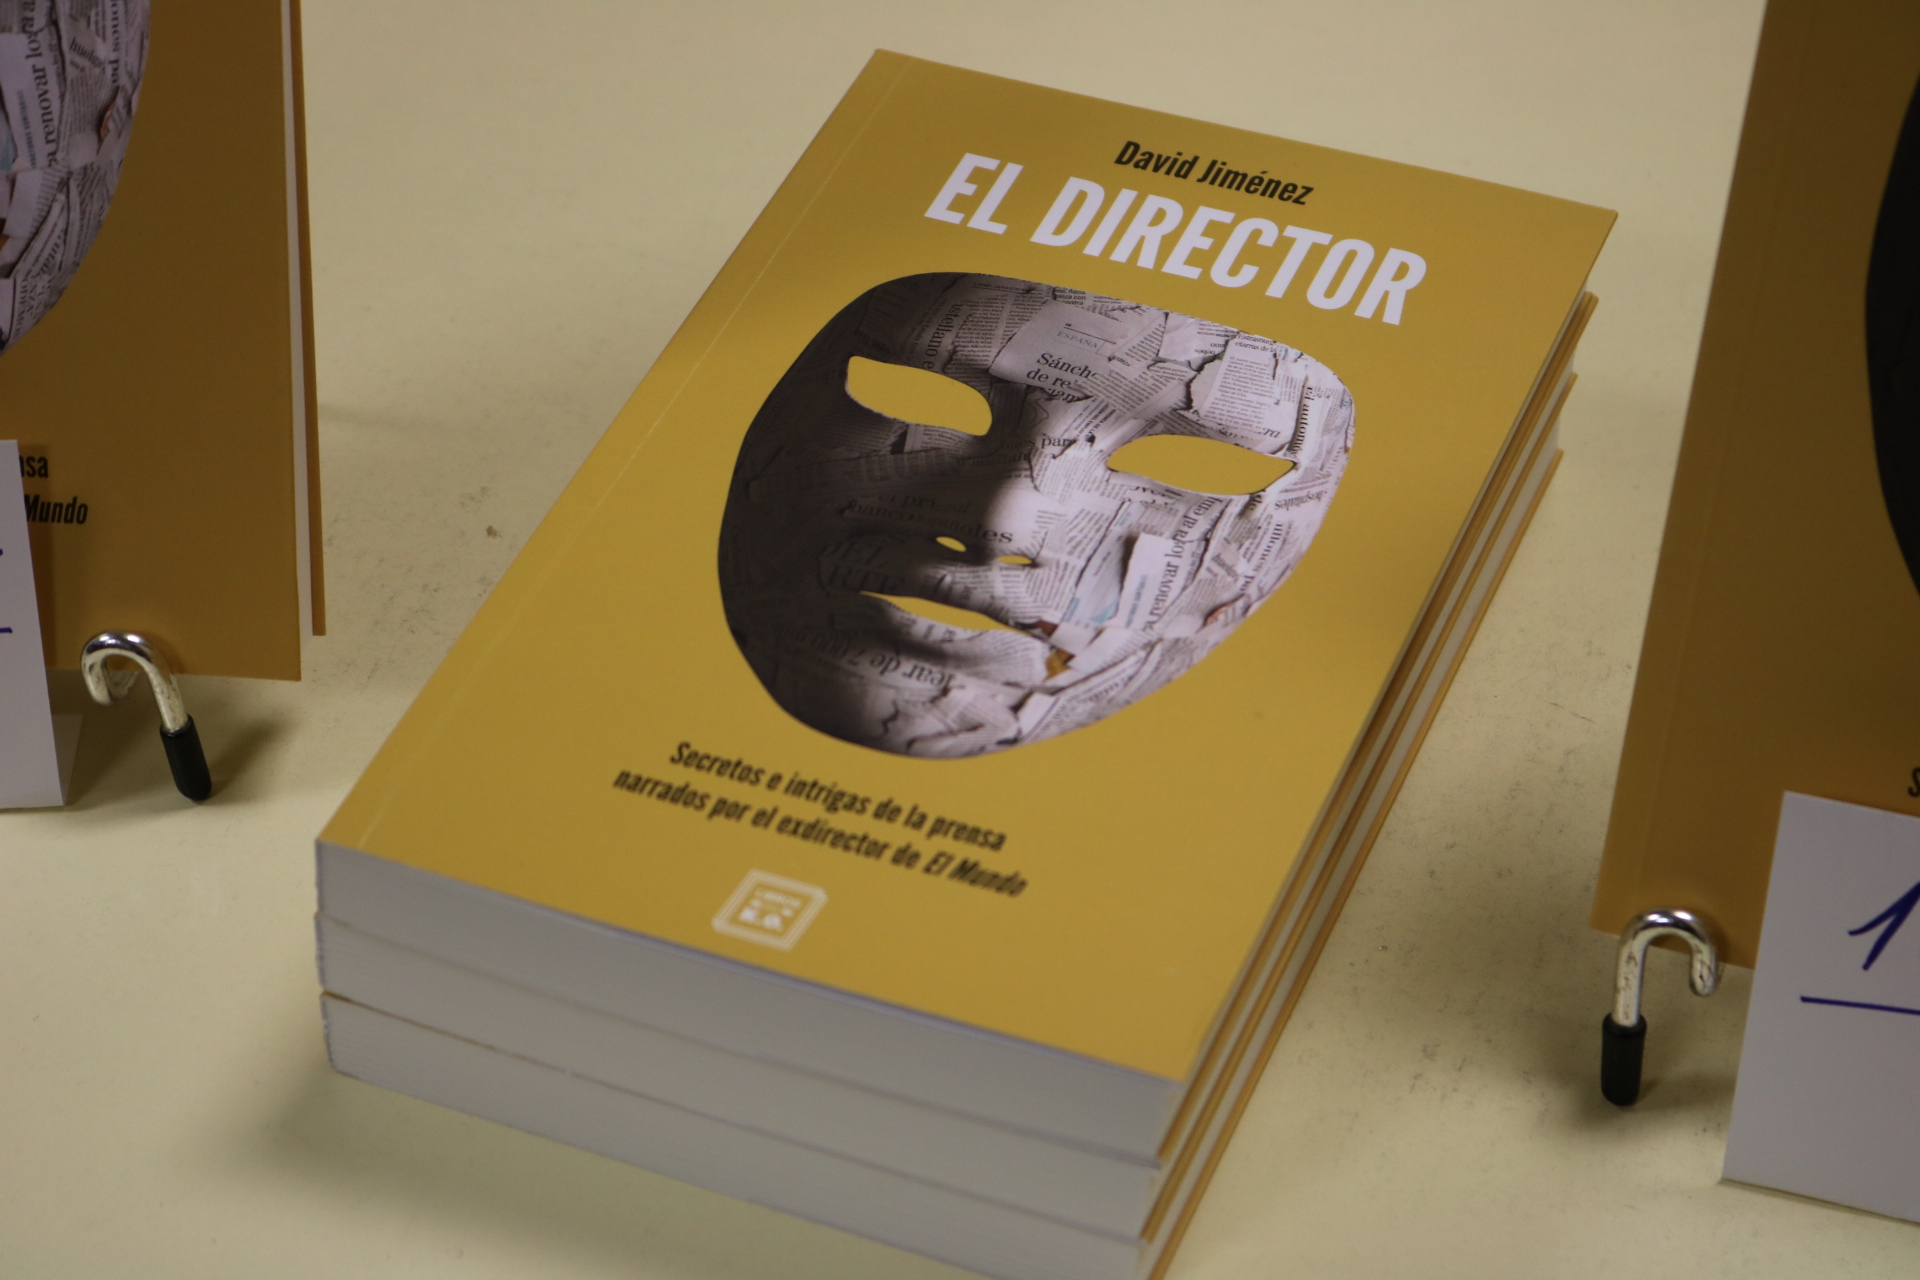 El periodista David Jiménez presenta "El Director" en la Sala Naranja - 4